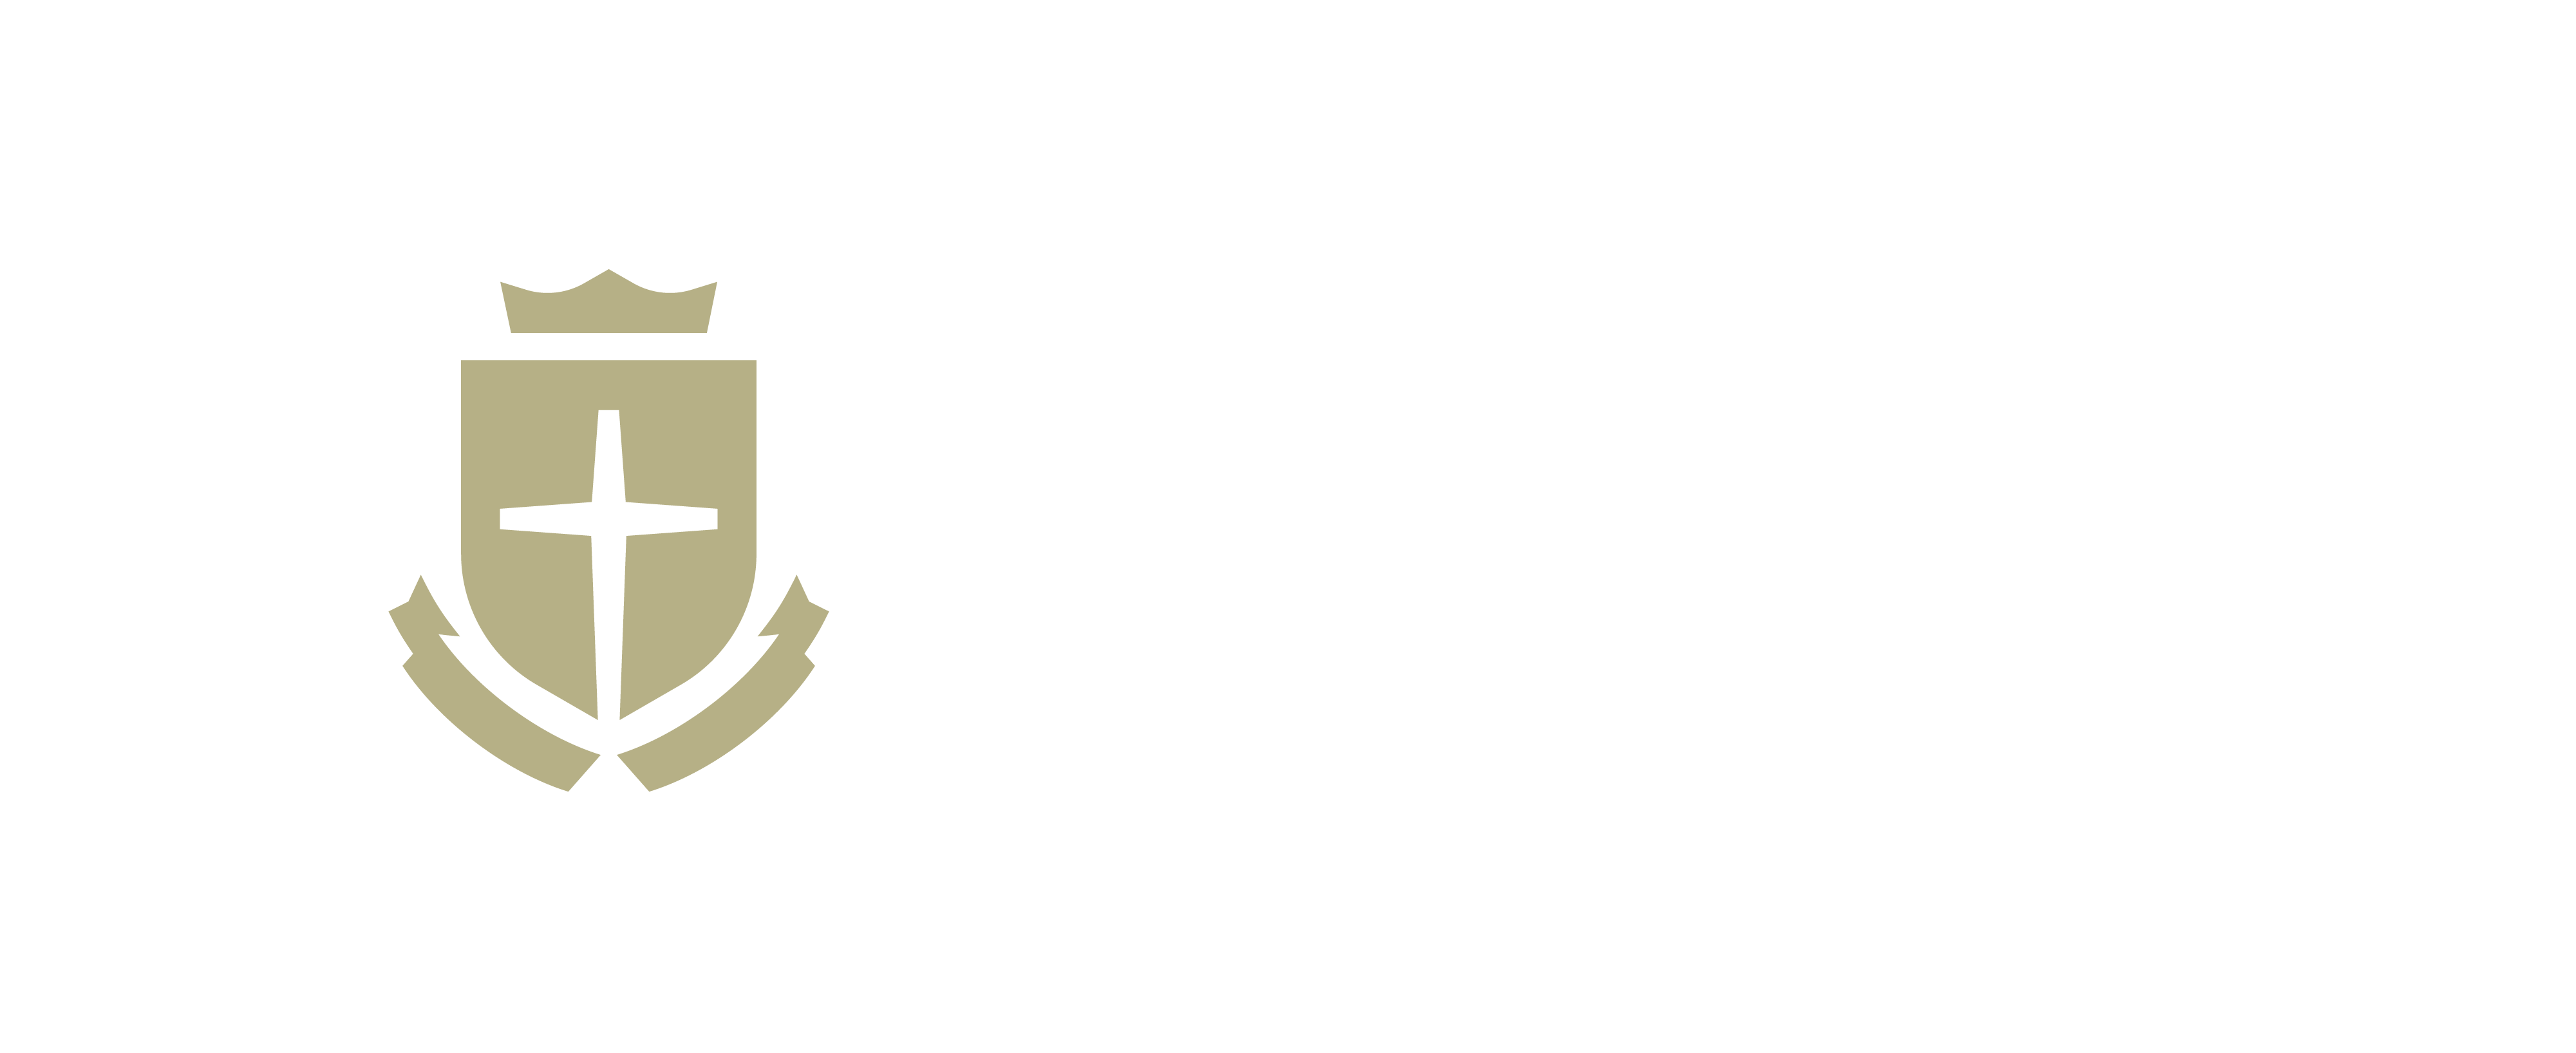 Colson Fellows logo